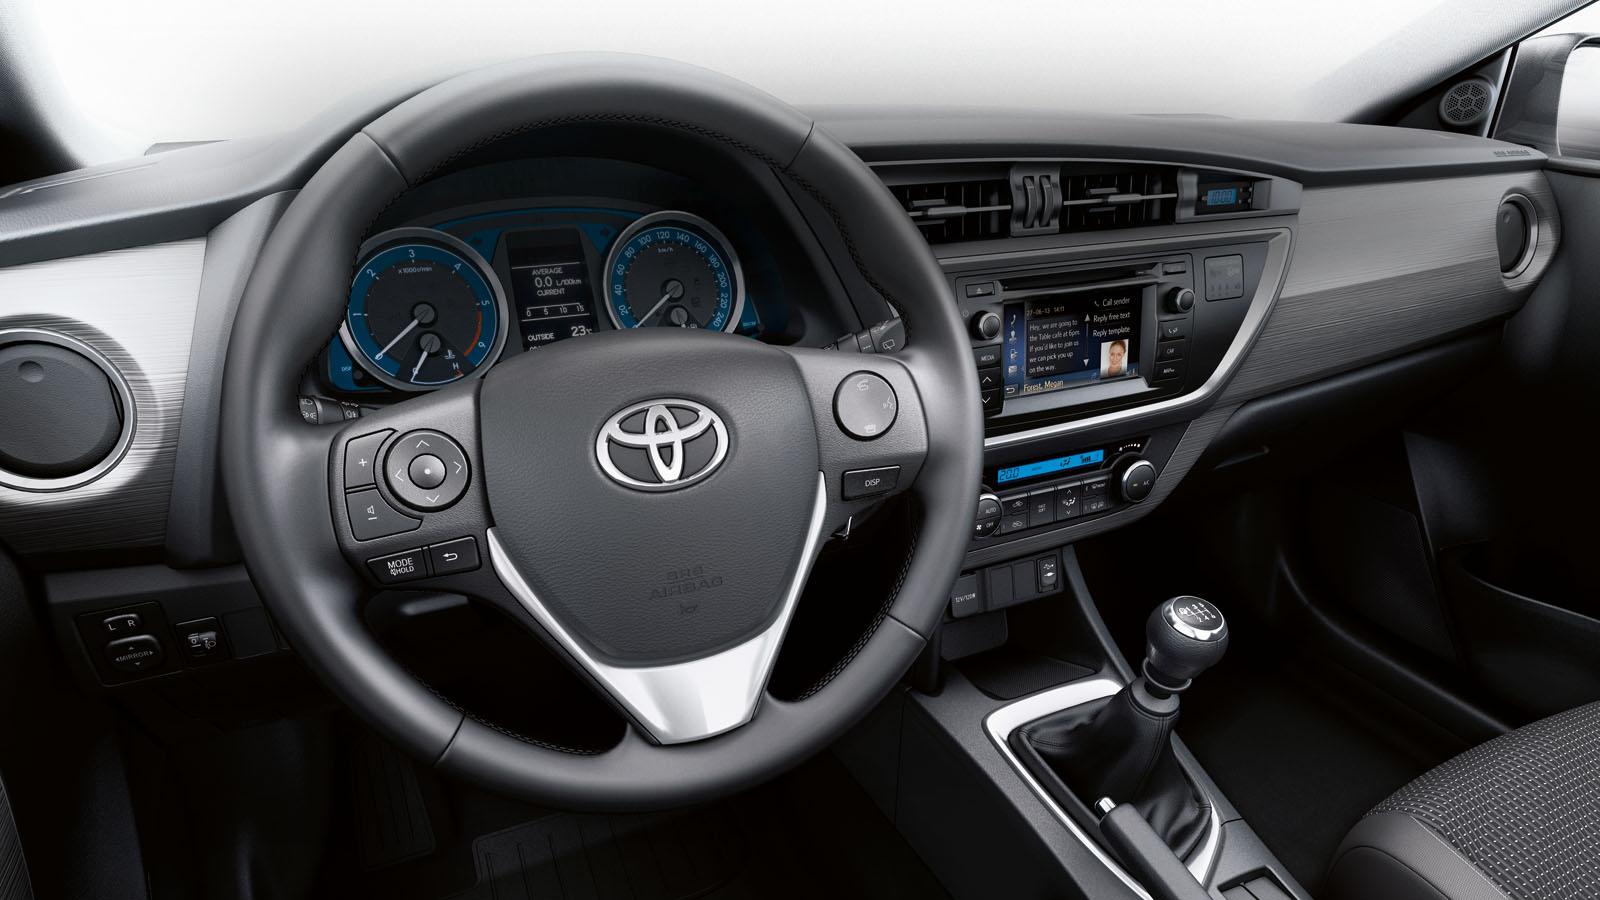 Toyota ritira dal mercato 3,4 milioni di auto con difetto airbag